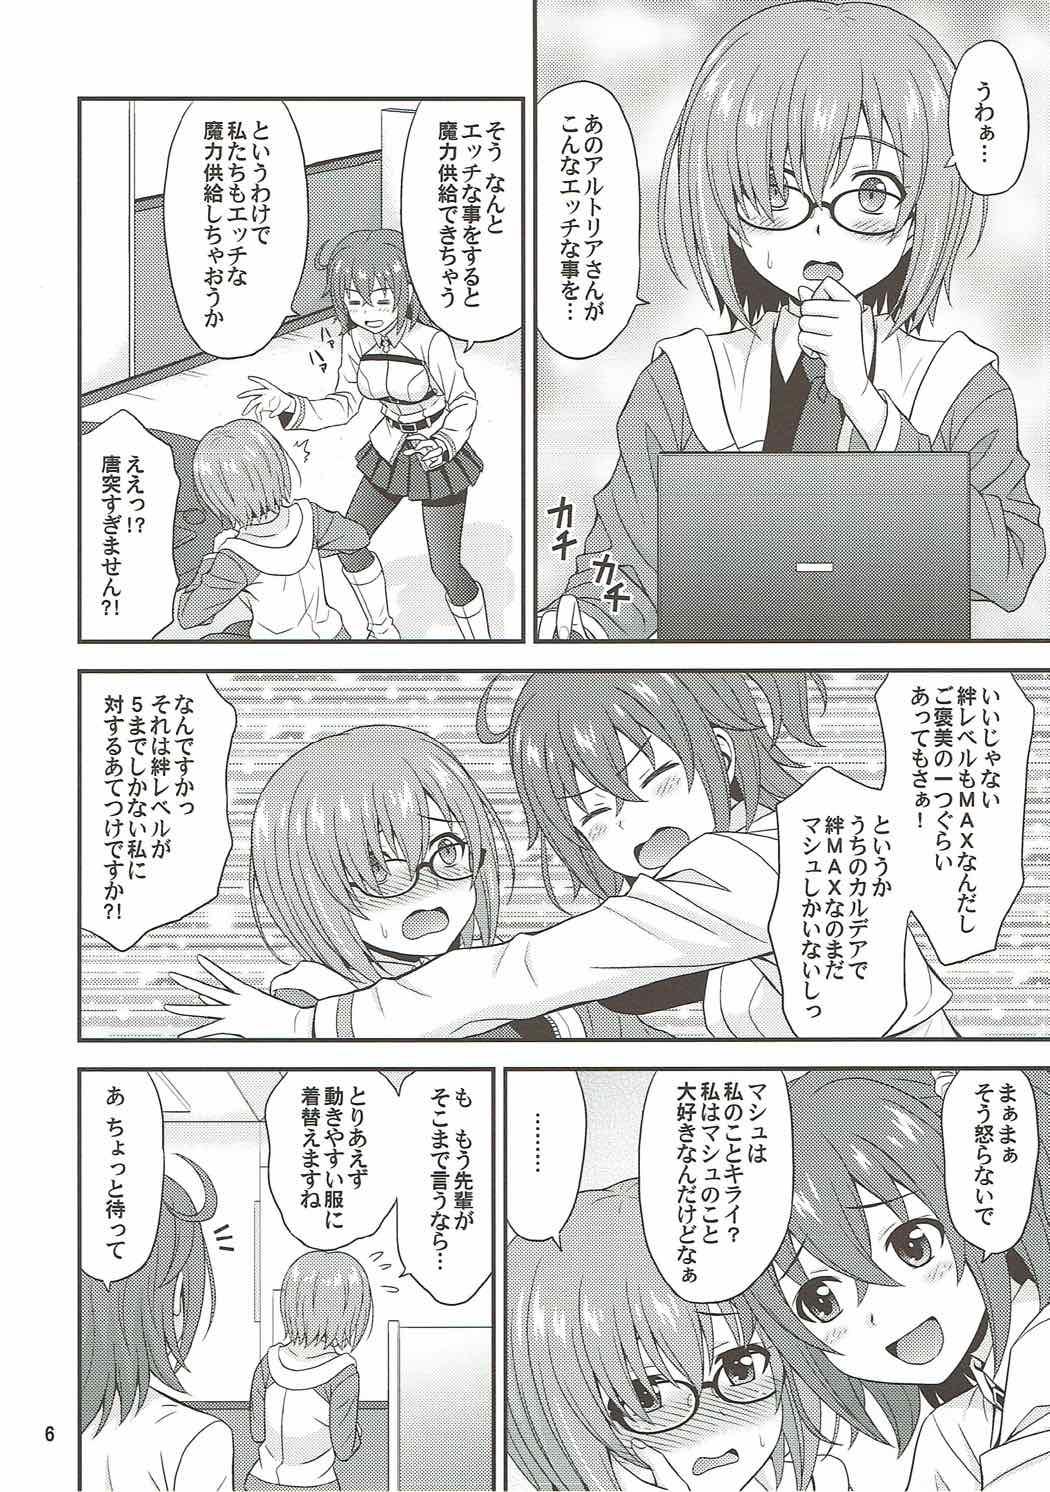 Tats Uchi no Megane no Niau Tayoreru Kouhai ga Totemo Kawaii! - Fate grand order Massage Sex - Page 5